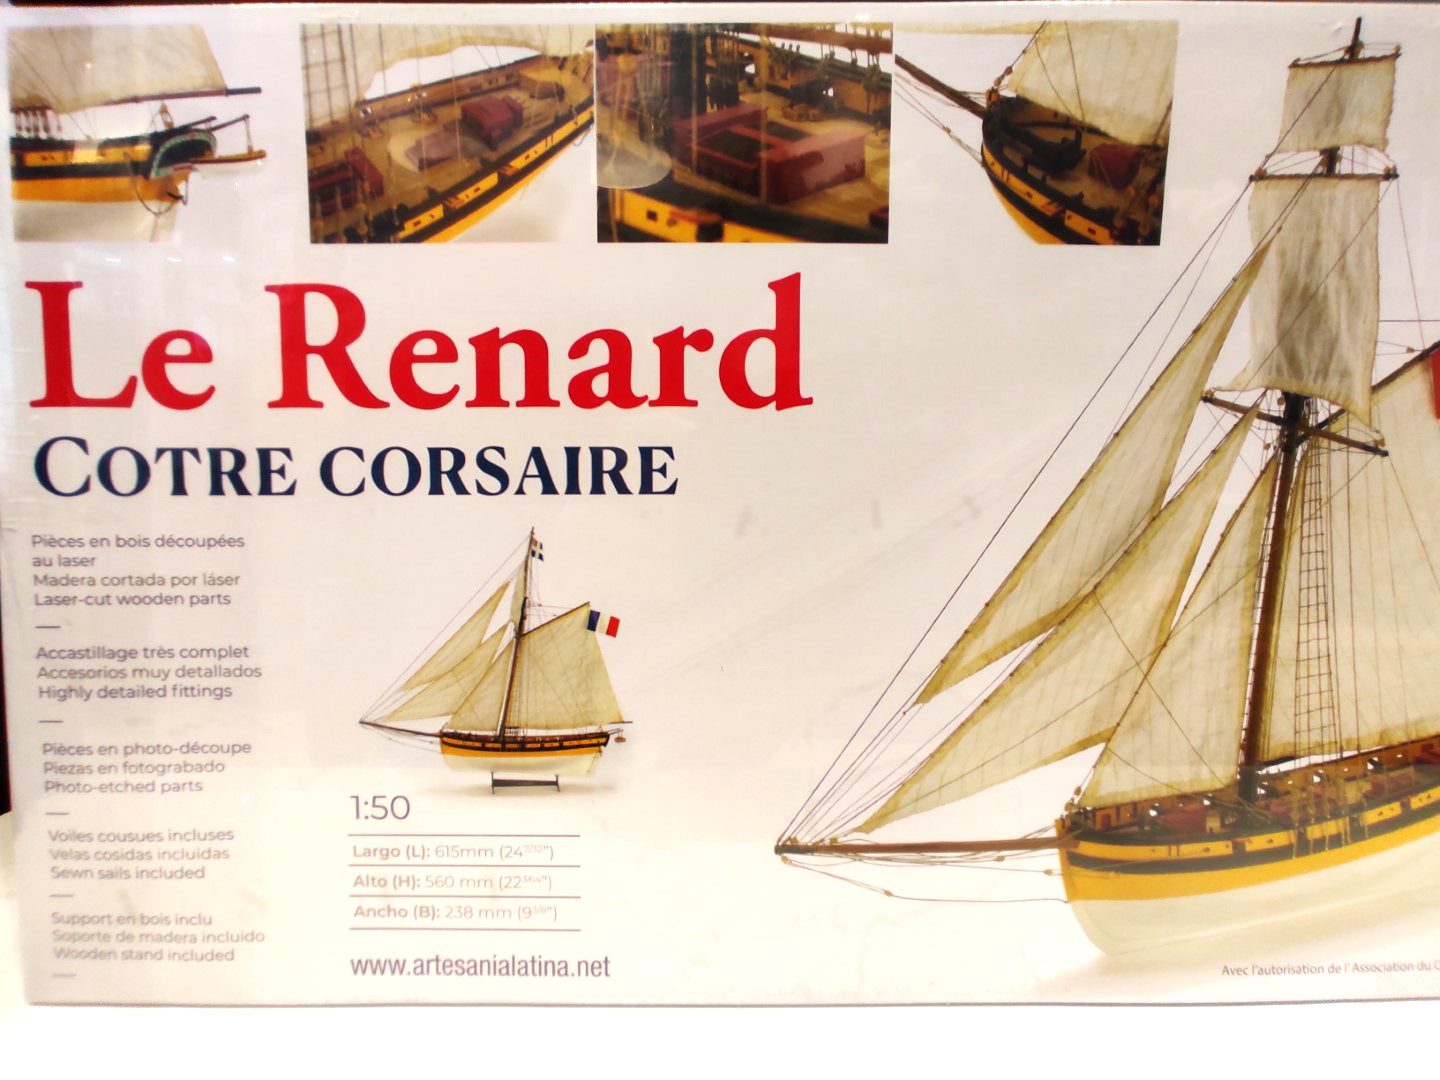 Le Renard cotre corsaire - Maquette de bateau